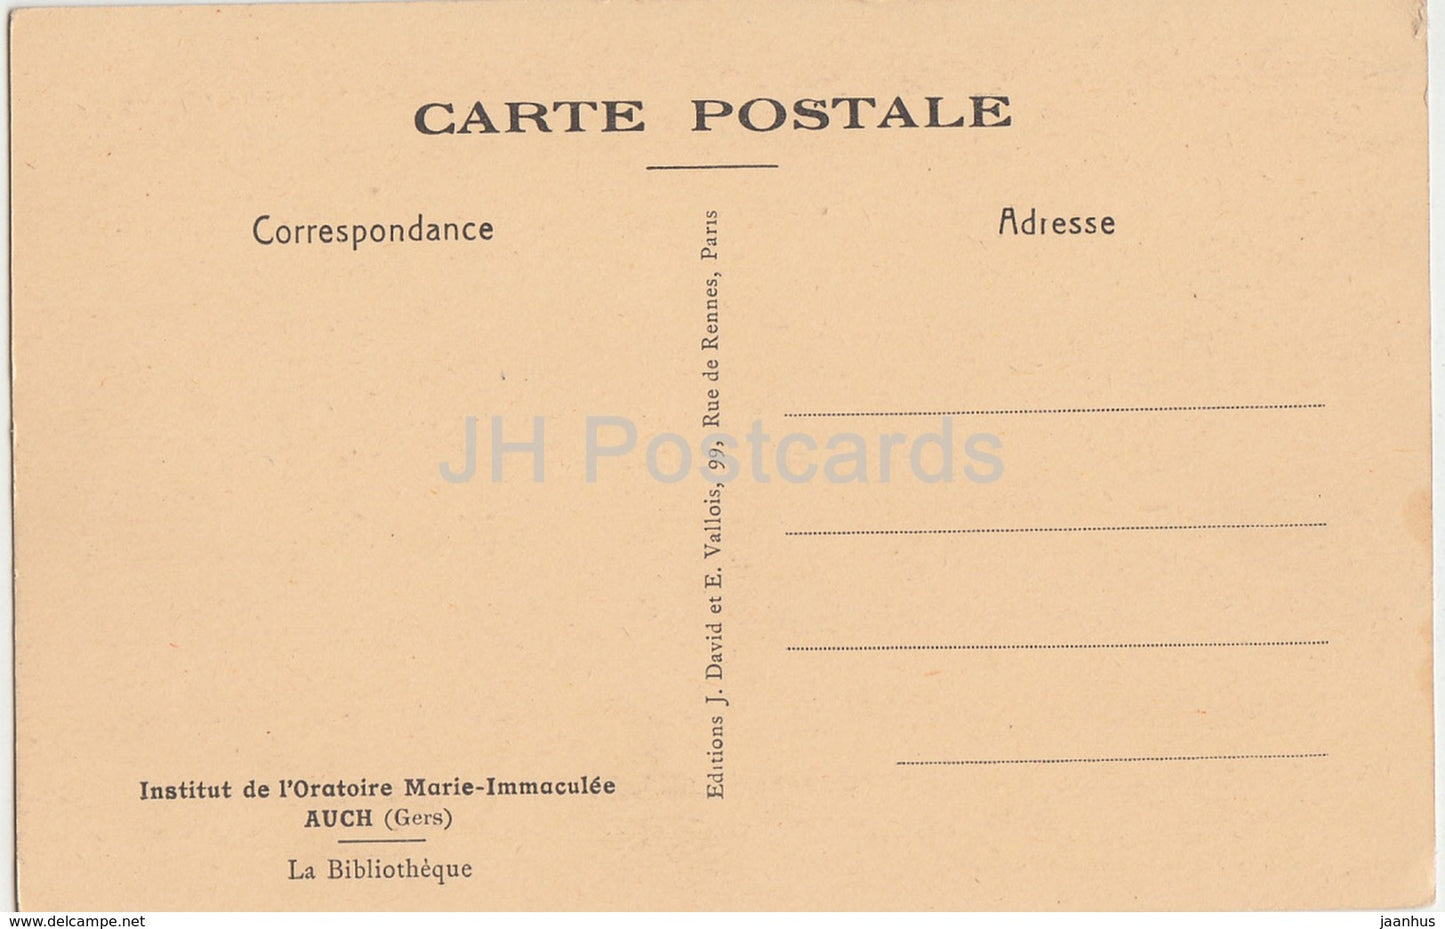 Auch - Institut de l'Oratoire Marie Immaculée - La Bibliothèque - bibliothèque - carte postale ancienne - France - inutilisée